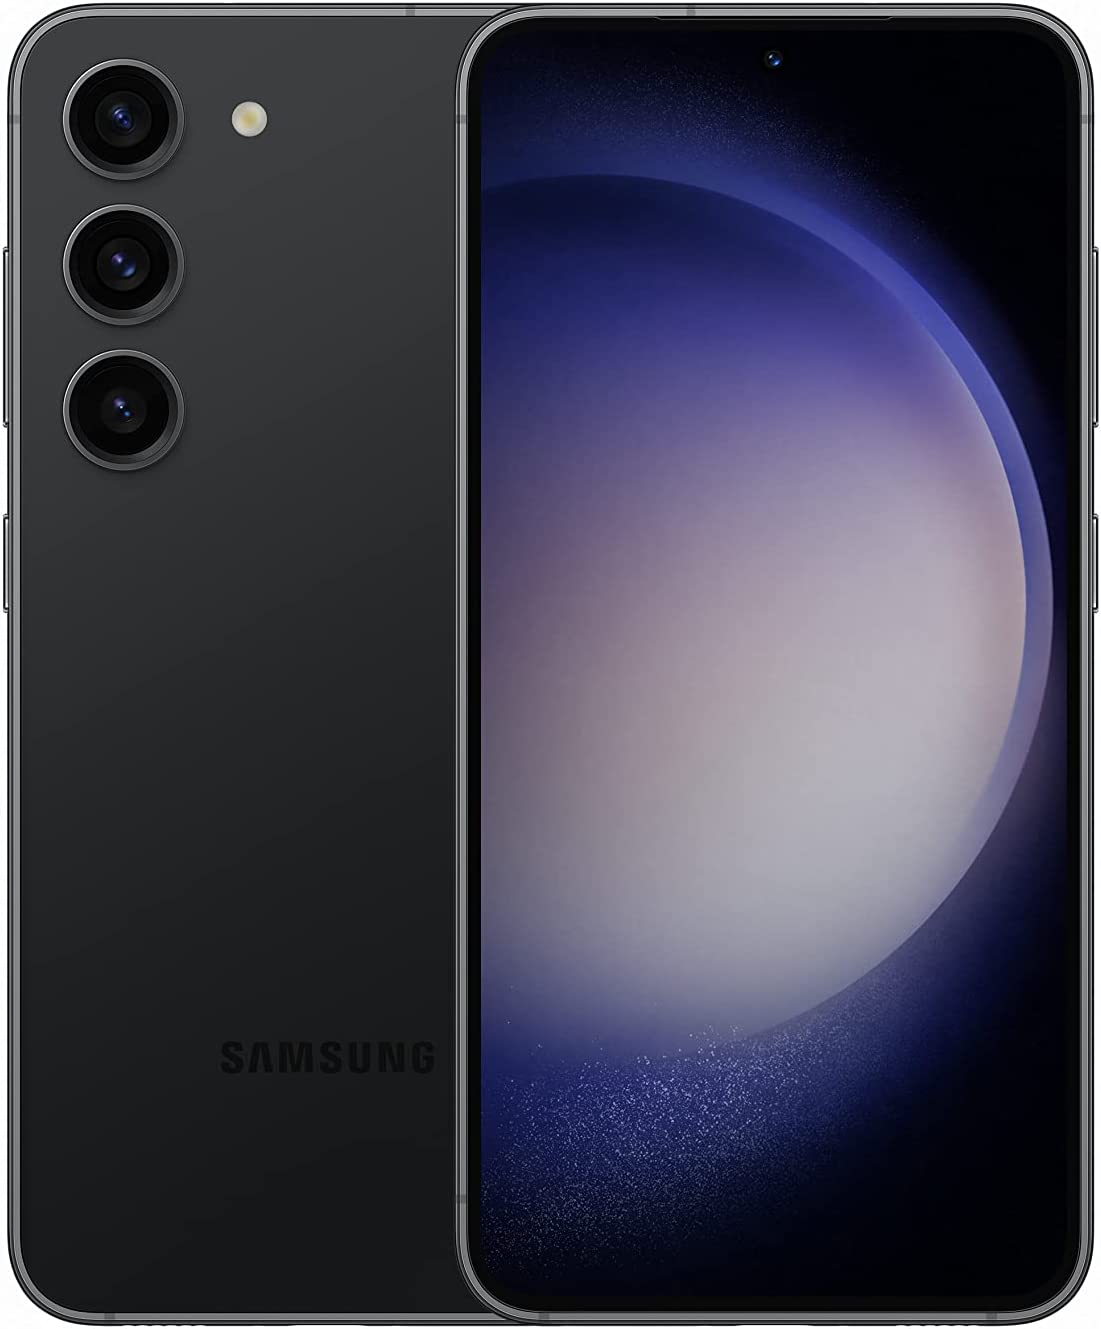 Novo celular barato da Samsung, Google Fotos mandou vídeos para